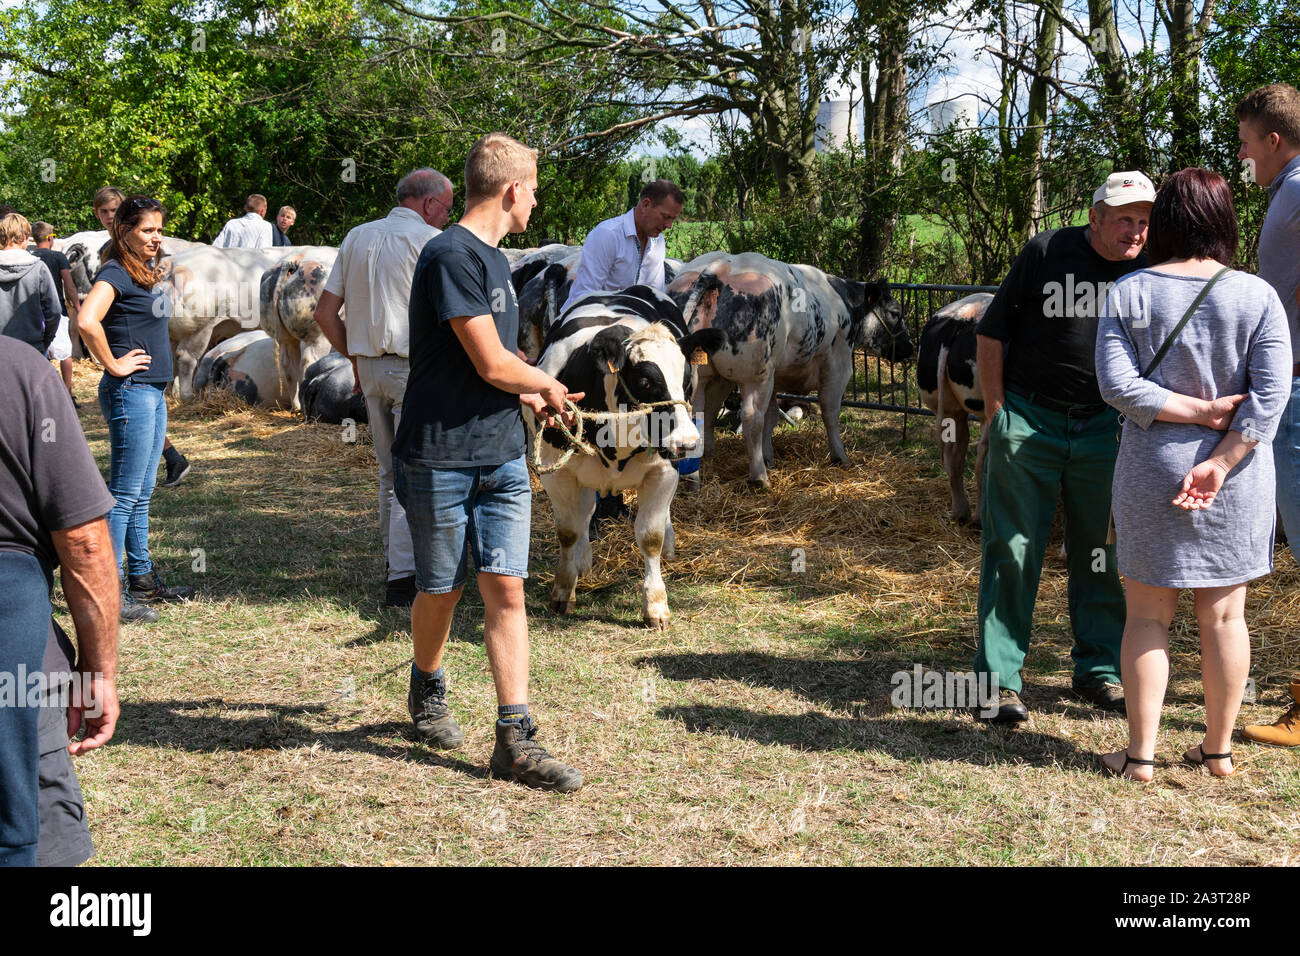 Kieldrecht, Belgique, 1 septembre 2019, au show de bovins que l'homme prend la vache retour à l'appréciation du jury Banque D'Images